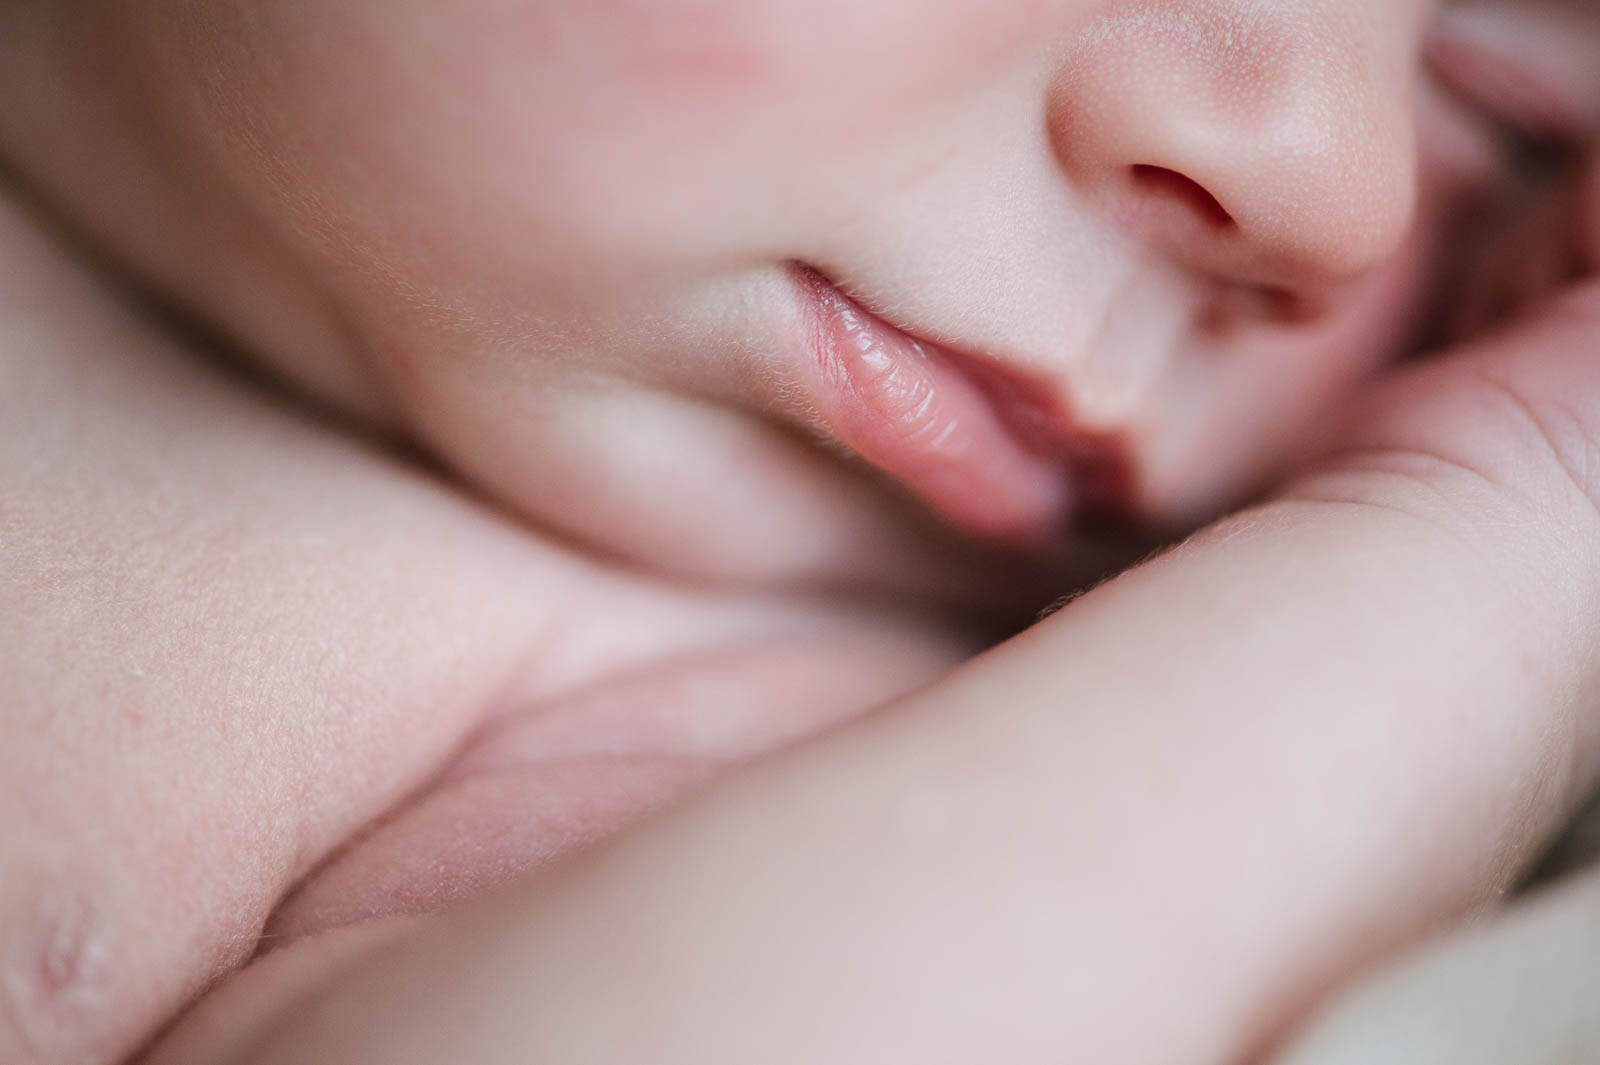 foto neonati newborn bambini verona vicenza trento